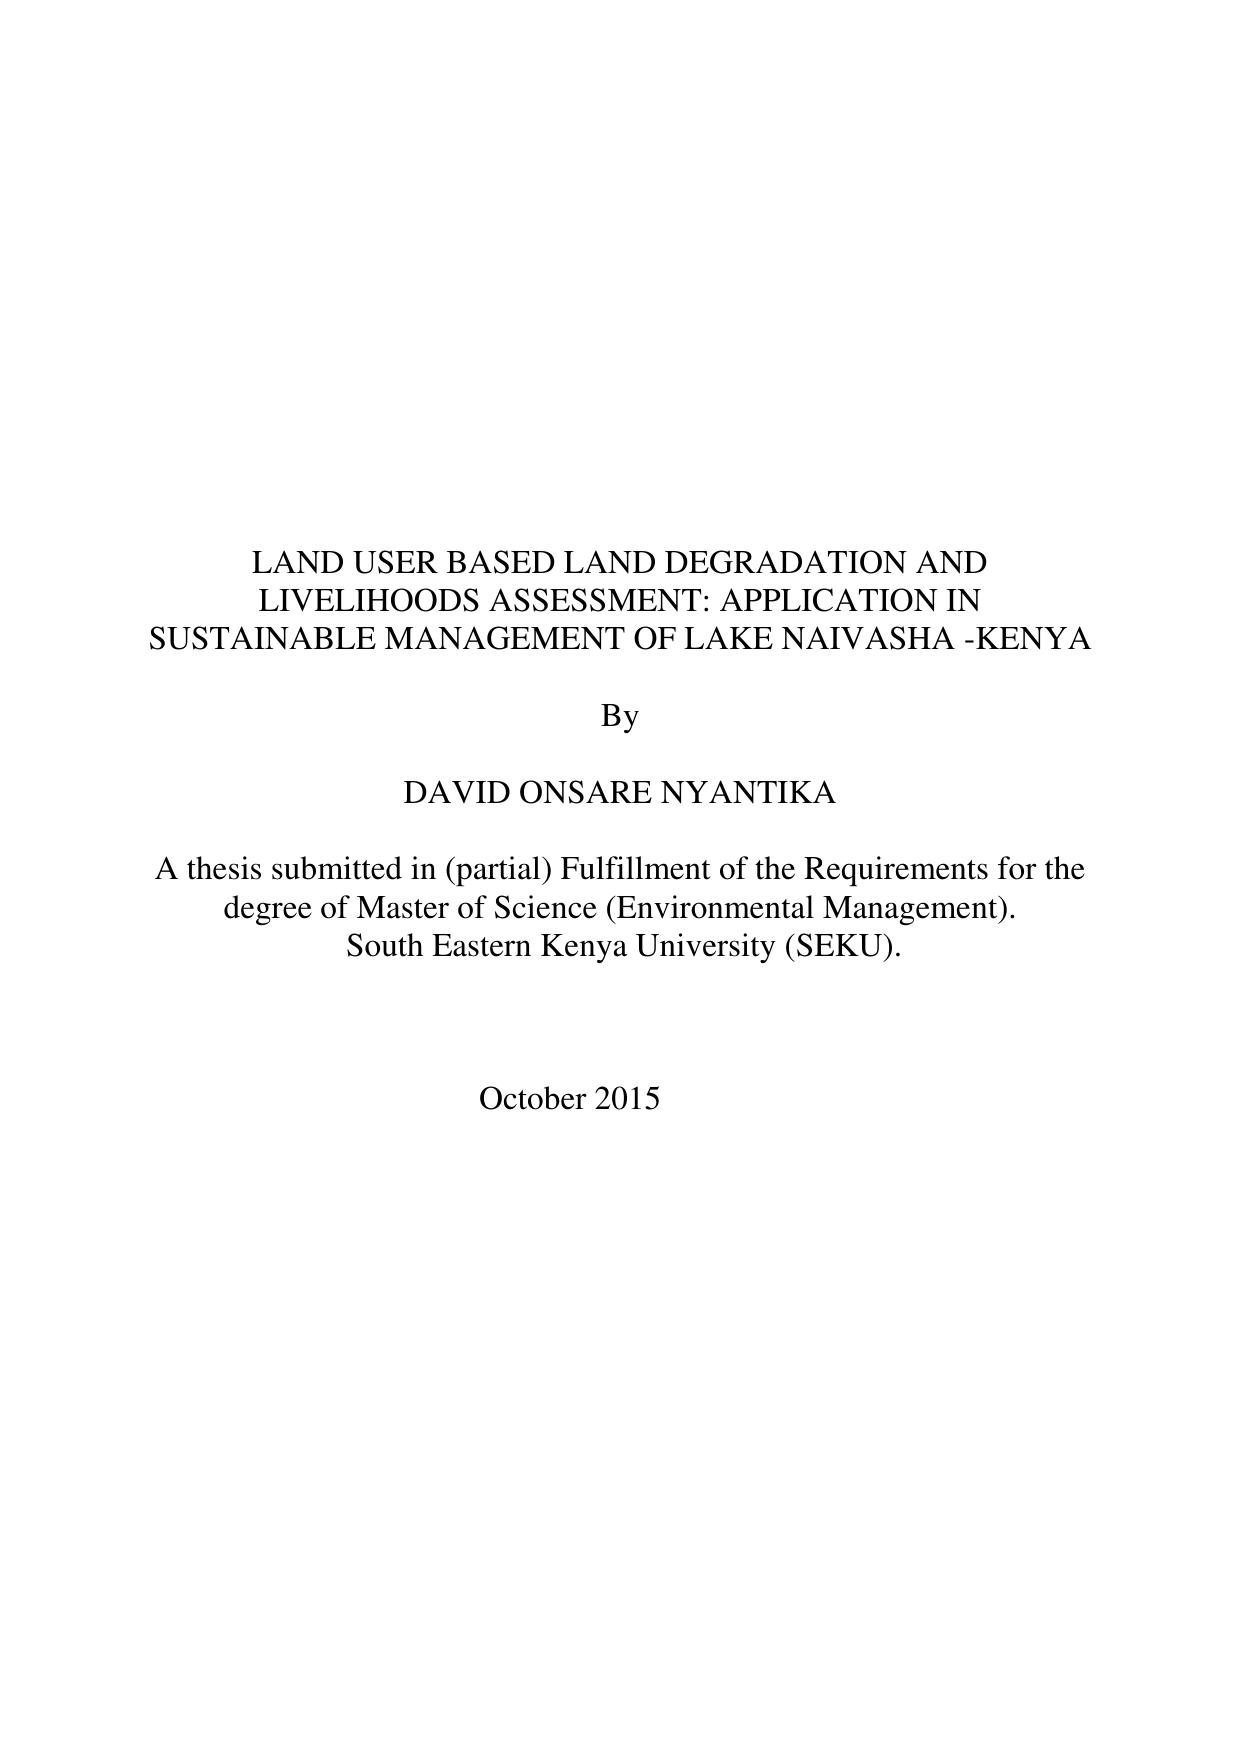 Land User Based Land Degradation and Livelihoods Assessment: ApplicationinSustainable Managementof LakeNaivasha-Kenya